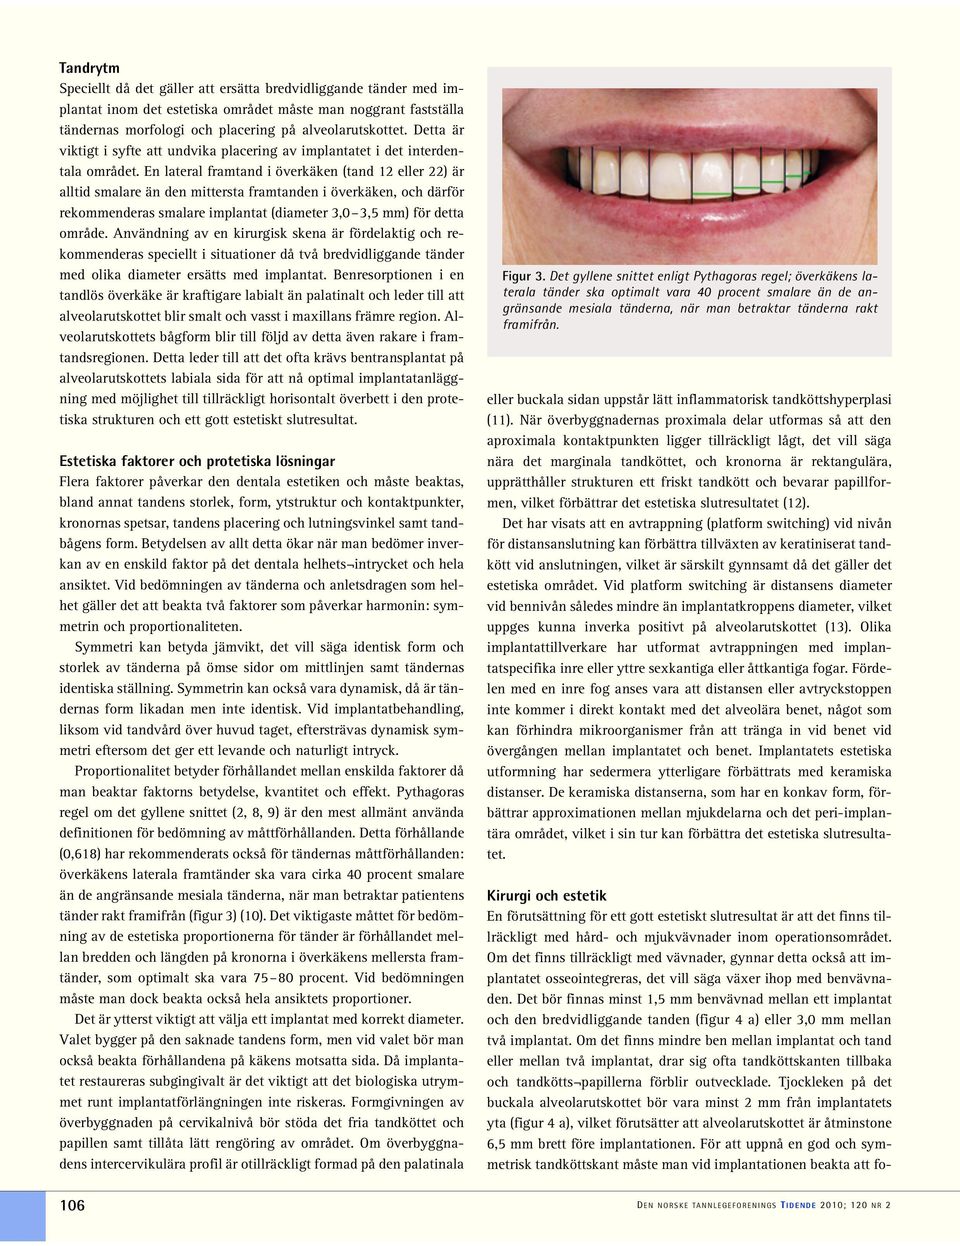 En lateral framtand i överkäken (tand 12 eller 22) är alltid smalare än den mittersta framtanden i överkäken, och därför rekommenderas smalare implantat (diameter 3,0 3,5 mm) för detta område.